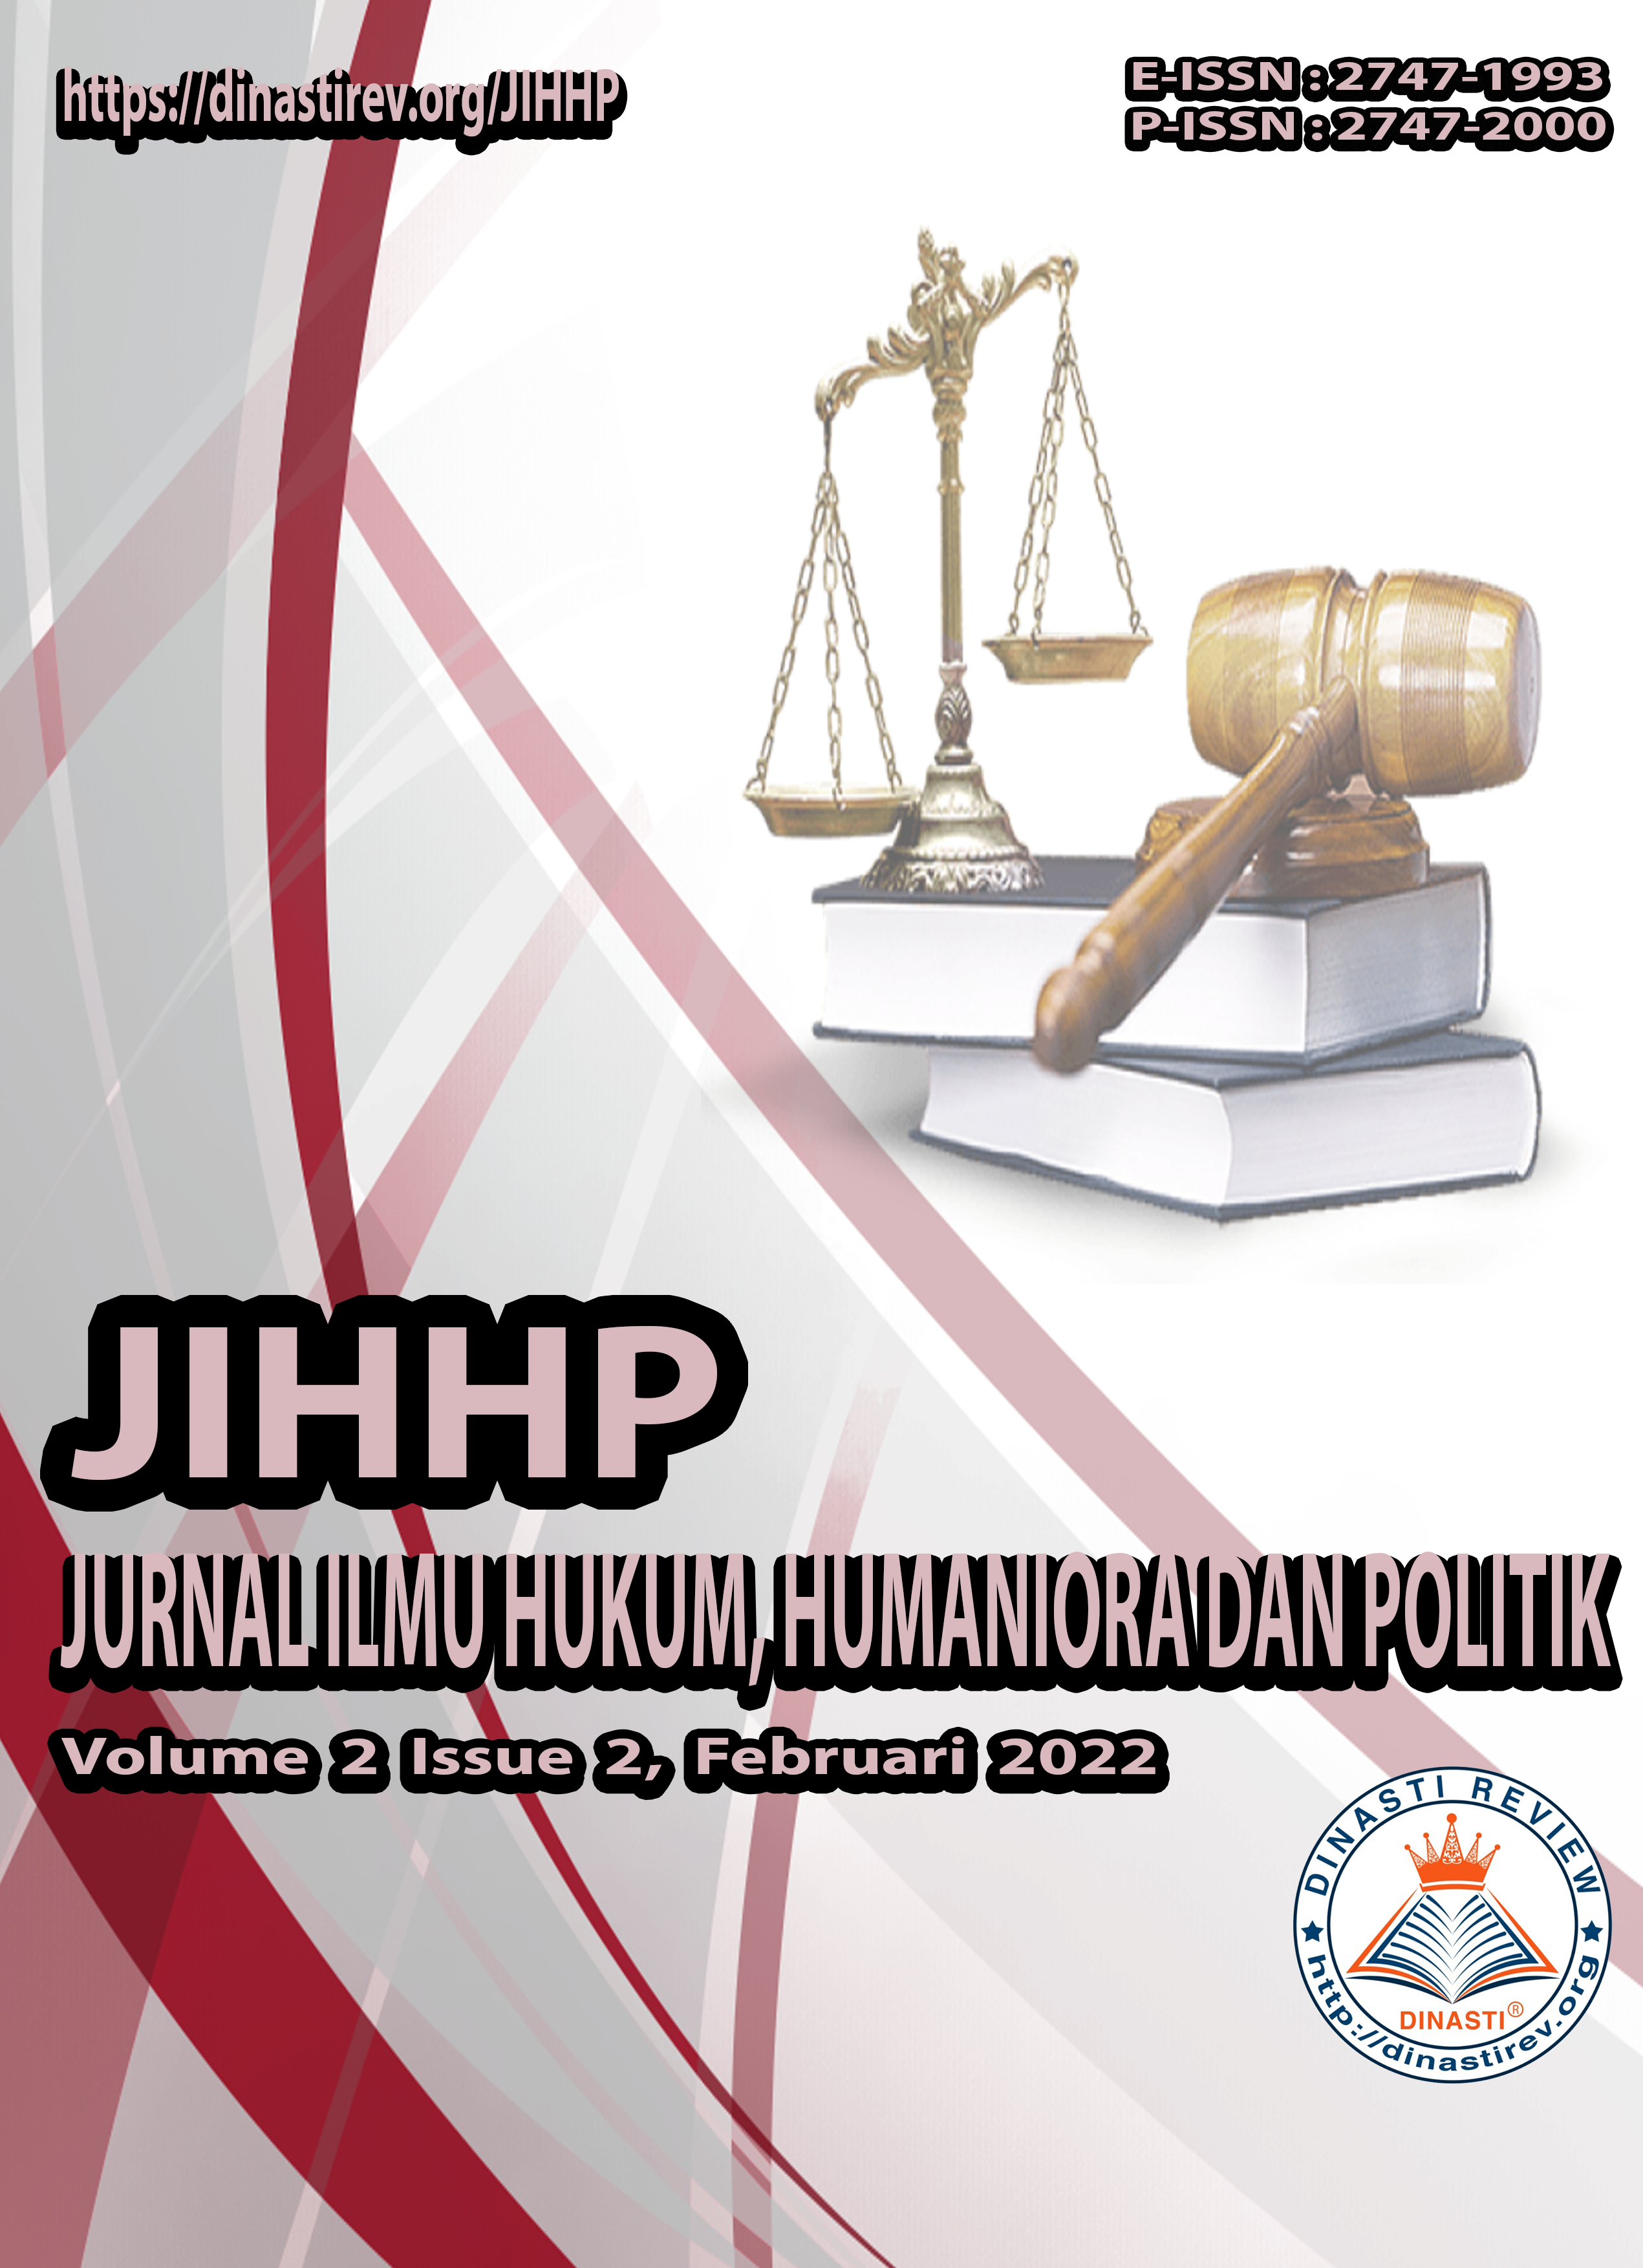 					View Vol. 2 No. 2 (2022): (JIHHP) Jurnal Ilmu Hukum, Humaniora dan Politik (Februari 2022)
				